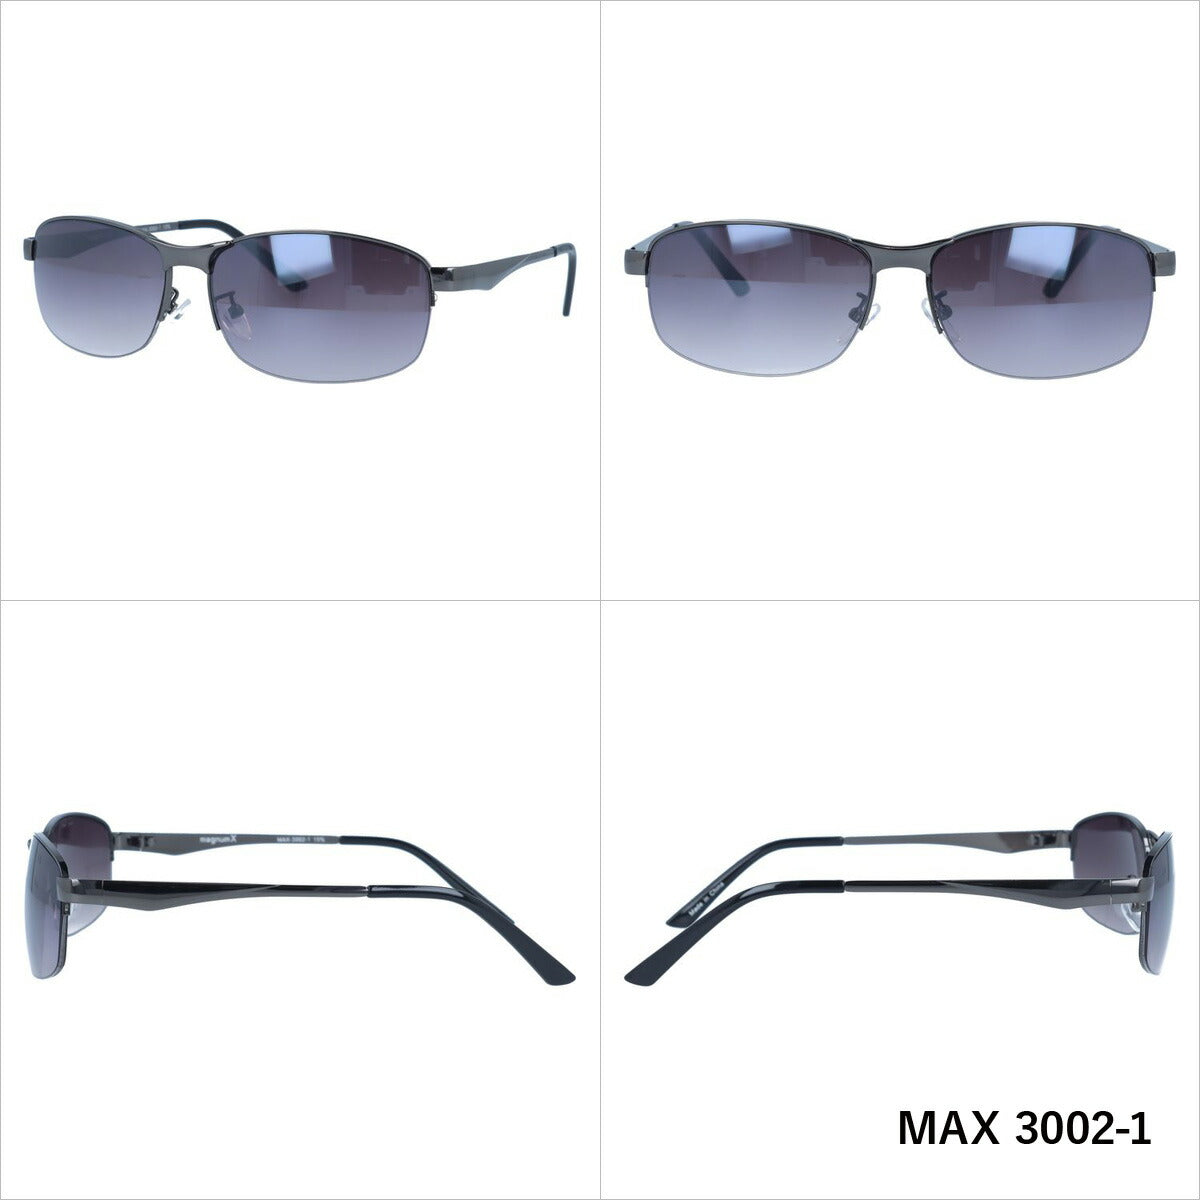 マグナムエックス サングラス ミラーレンズ magnumX MAX 3002 全3カラー 58サイズ スクエア メンズ レディース 紫外線対策 UVカット おしゃれ プレゼント ギフト